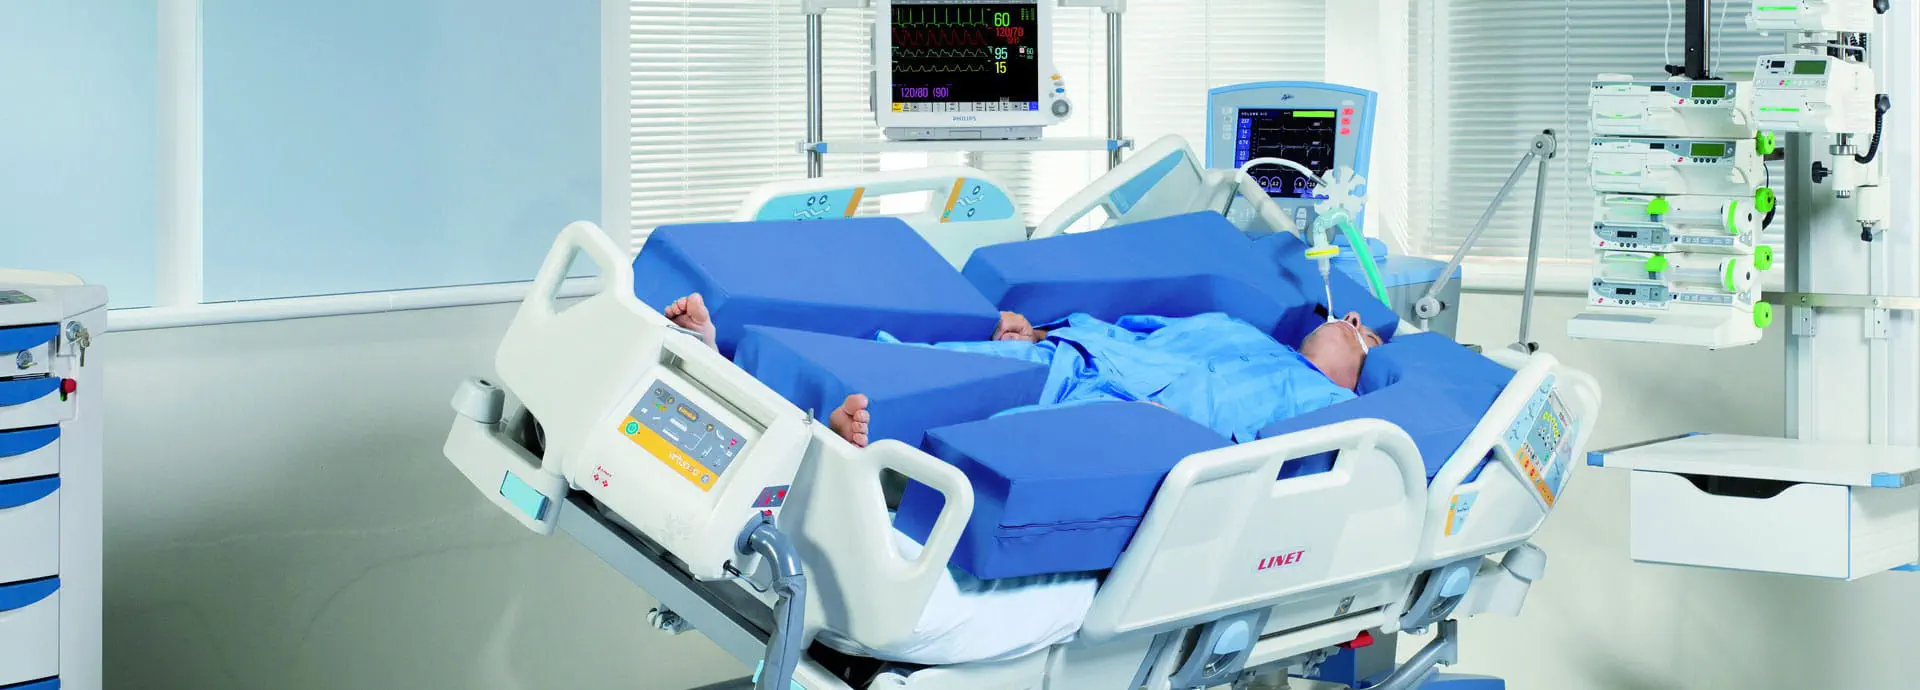 เตียงผู้ป่วยสำหรับไอซียูปรับด้วยไฟฟ้าชนิด 4 motor  Medical bed multicare  wissner-bosserhoff